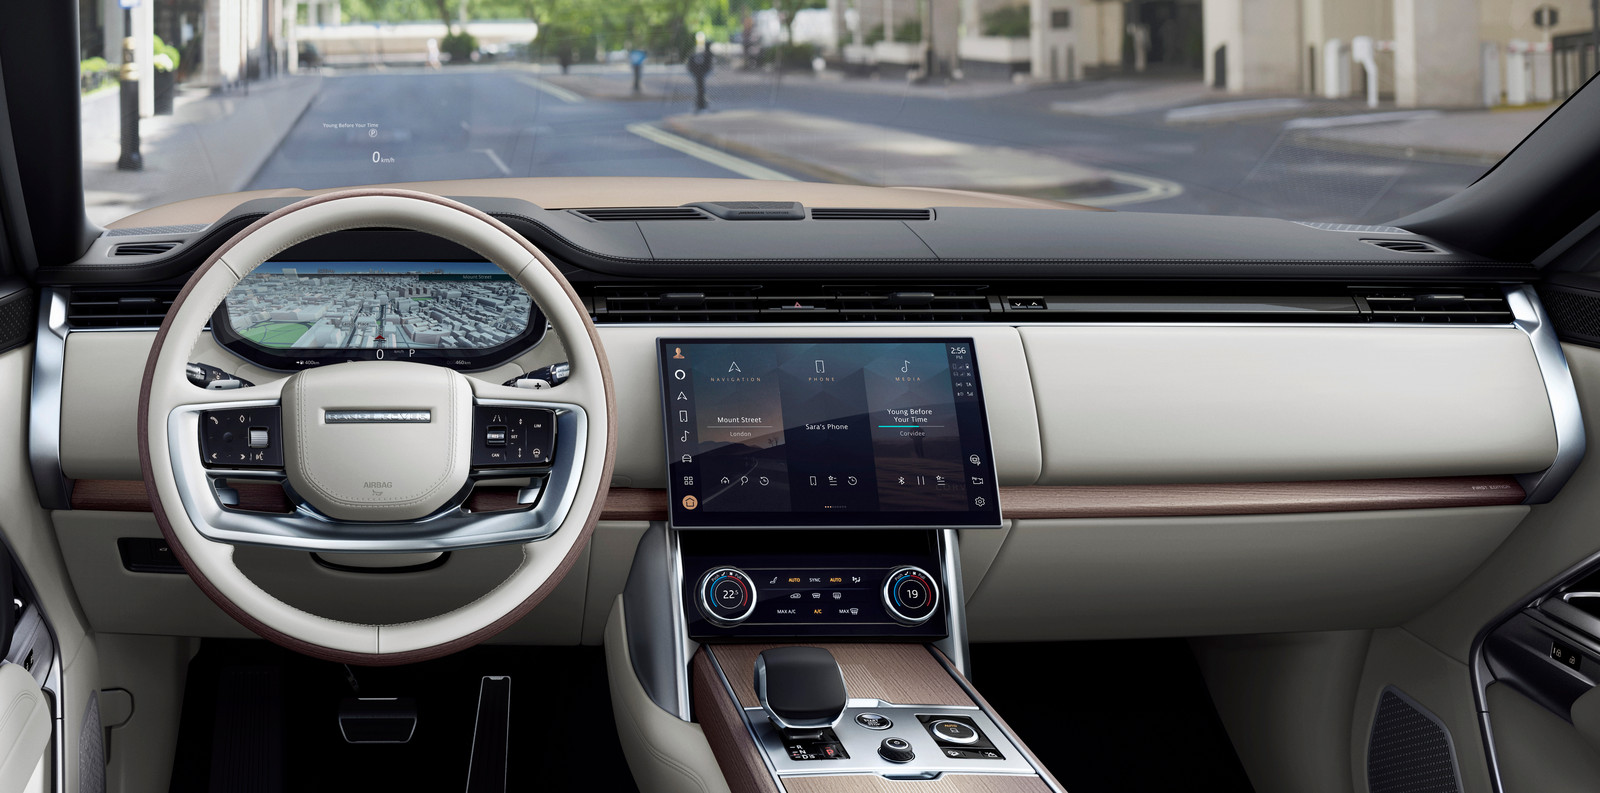 Geen overdreven grote schermen in de nieuwe Range Rover. De met spraak gestuurde Amazon Alexa zit standaard ingebouwd